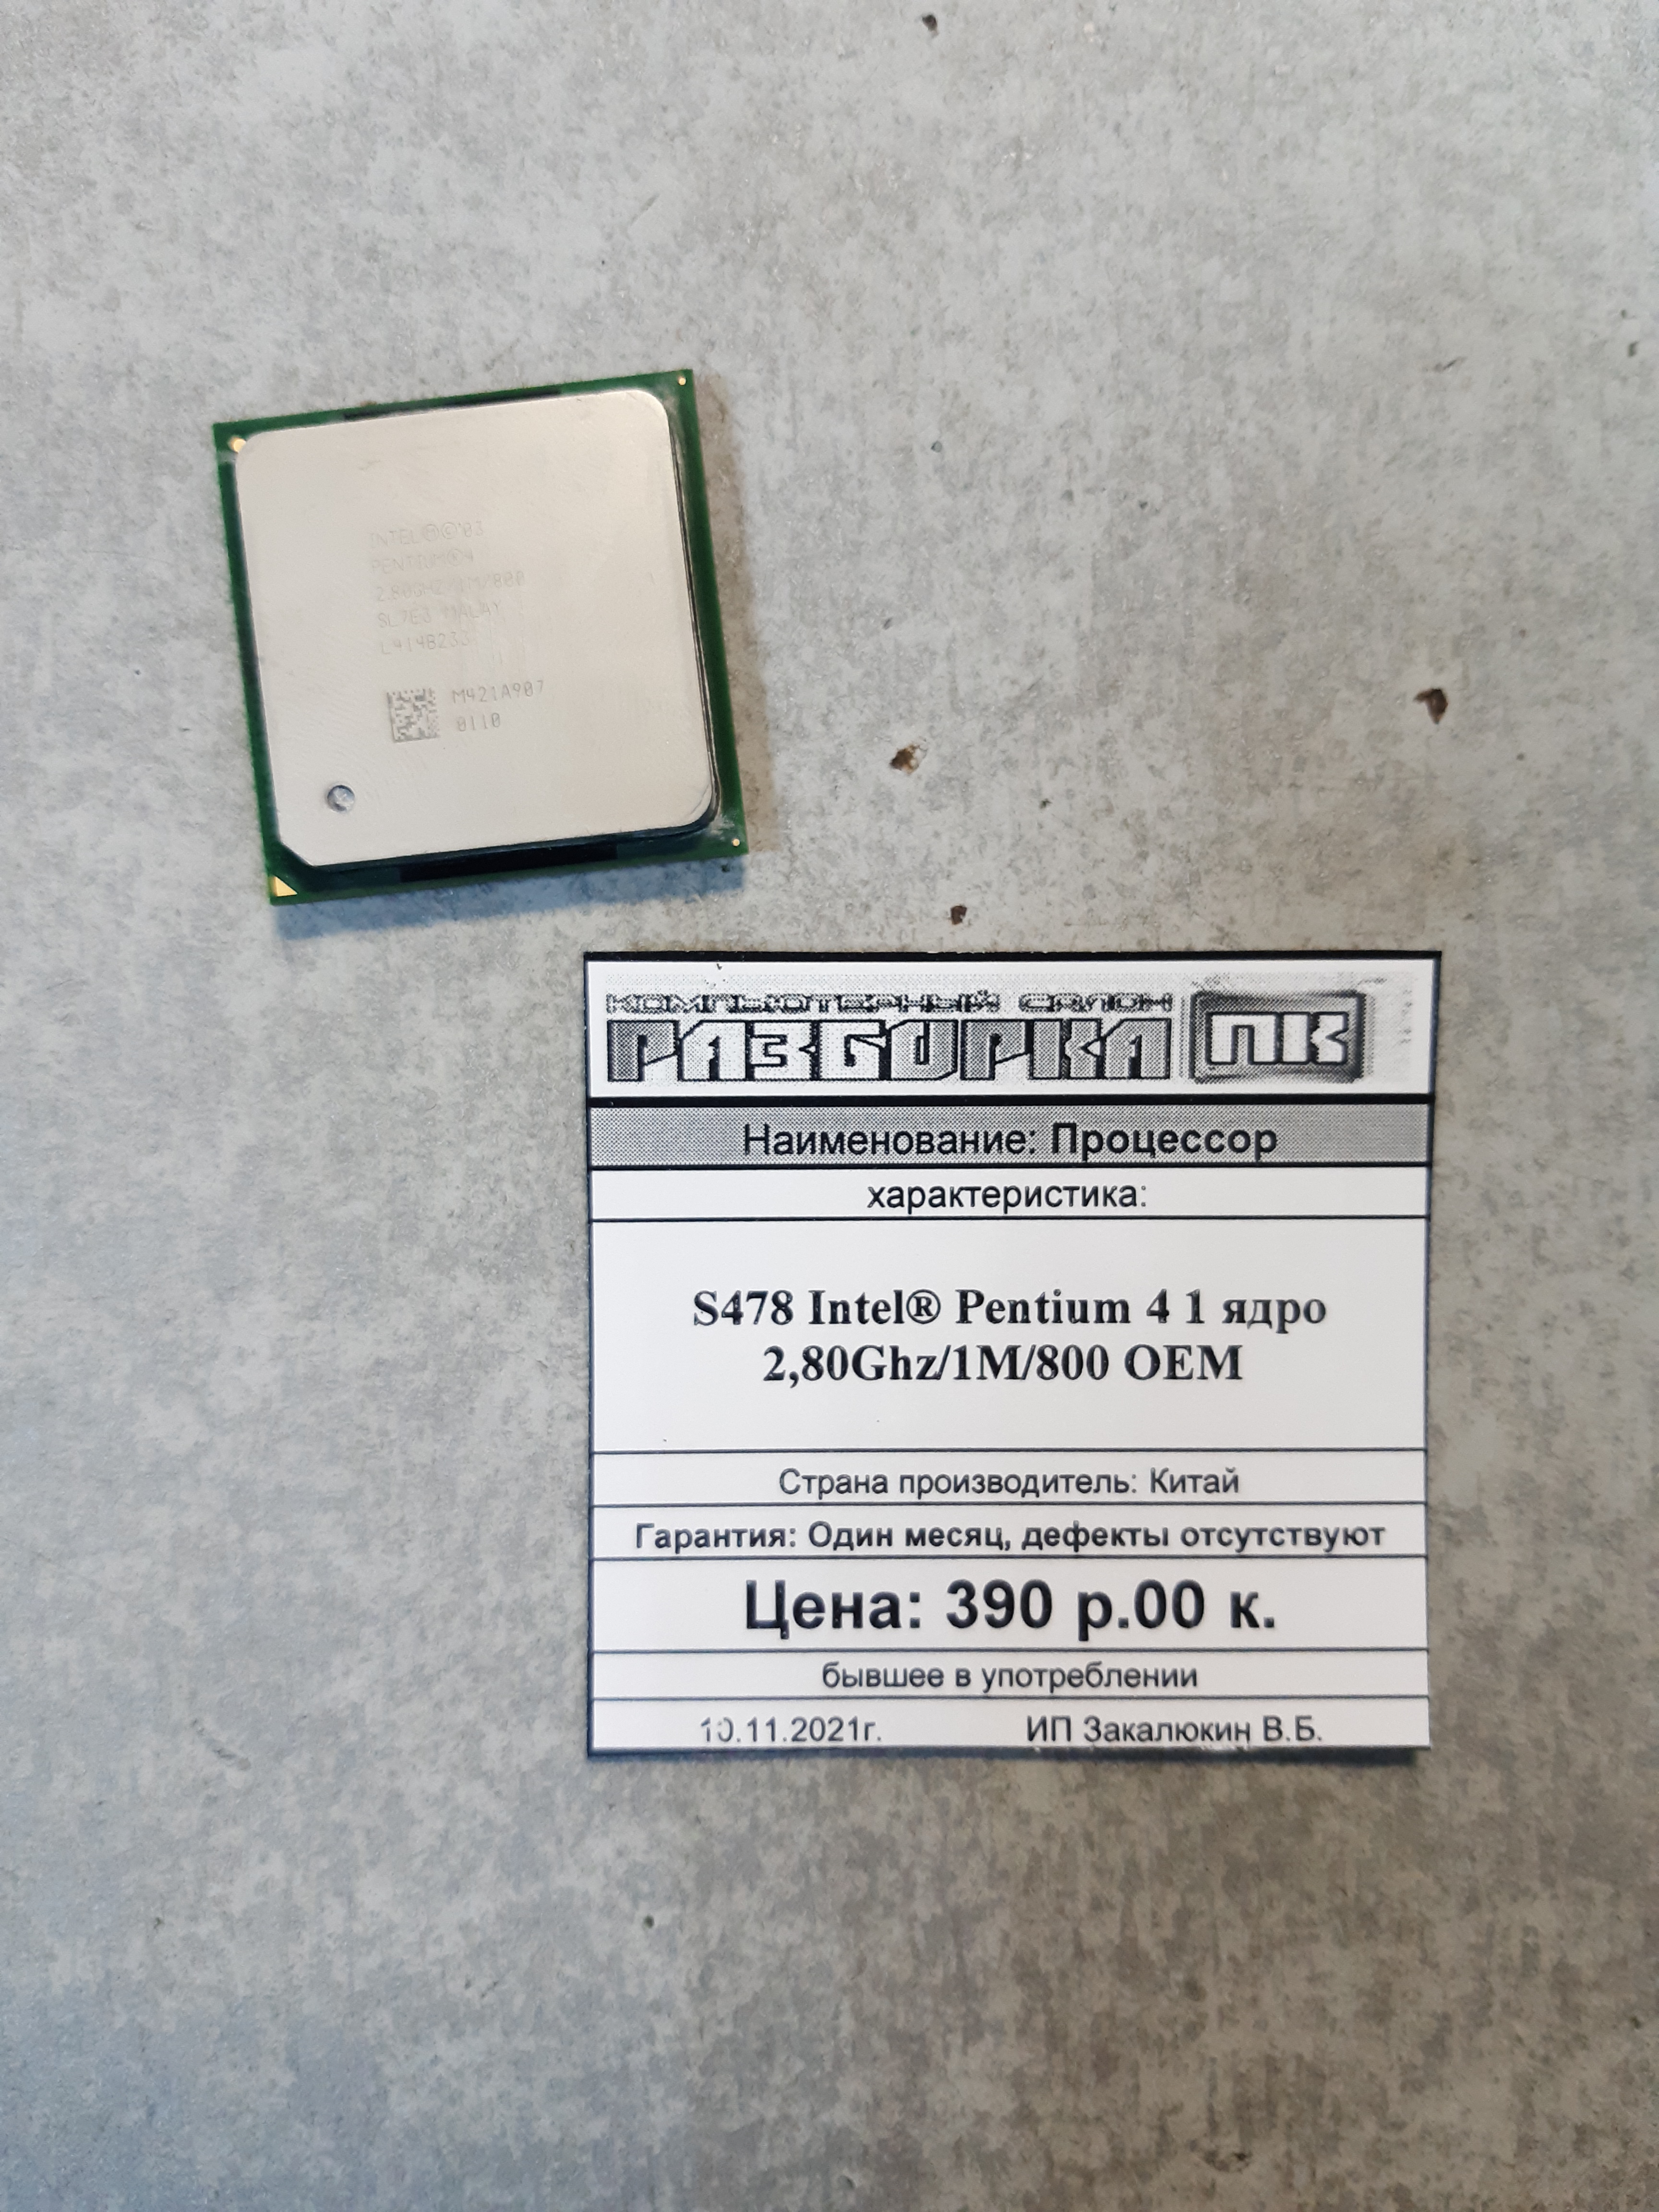 Процессор S478 Intel® Pentium 4 1 ядро 2,80Ghz/1M/800 OEM